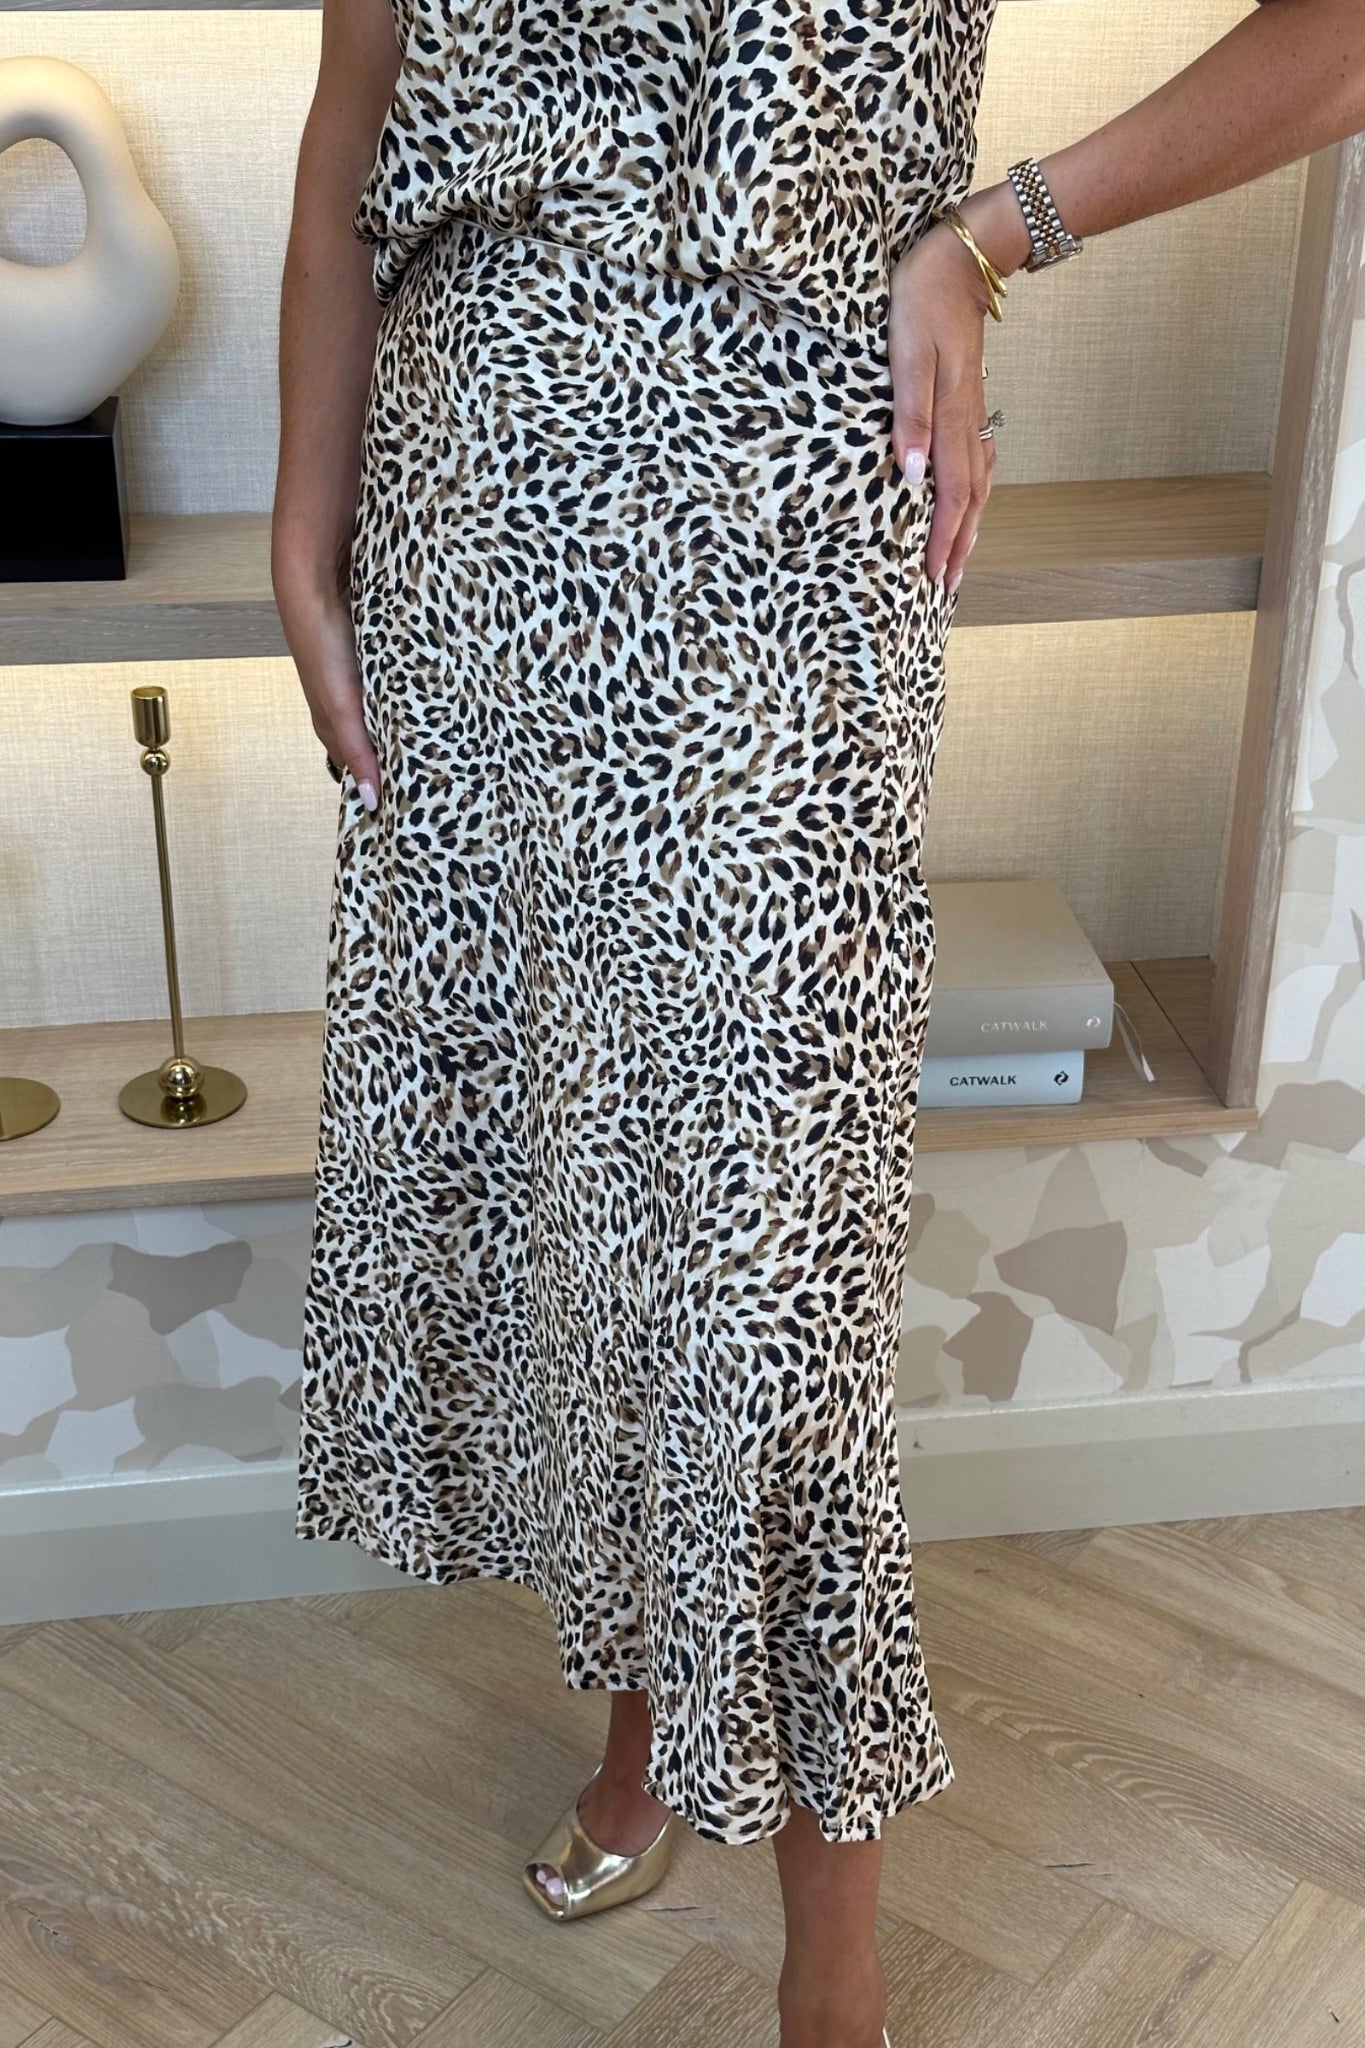 Becca Slip Midi Skirt In Leopard Print - The Walk in Wardrobe